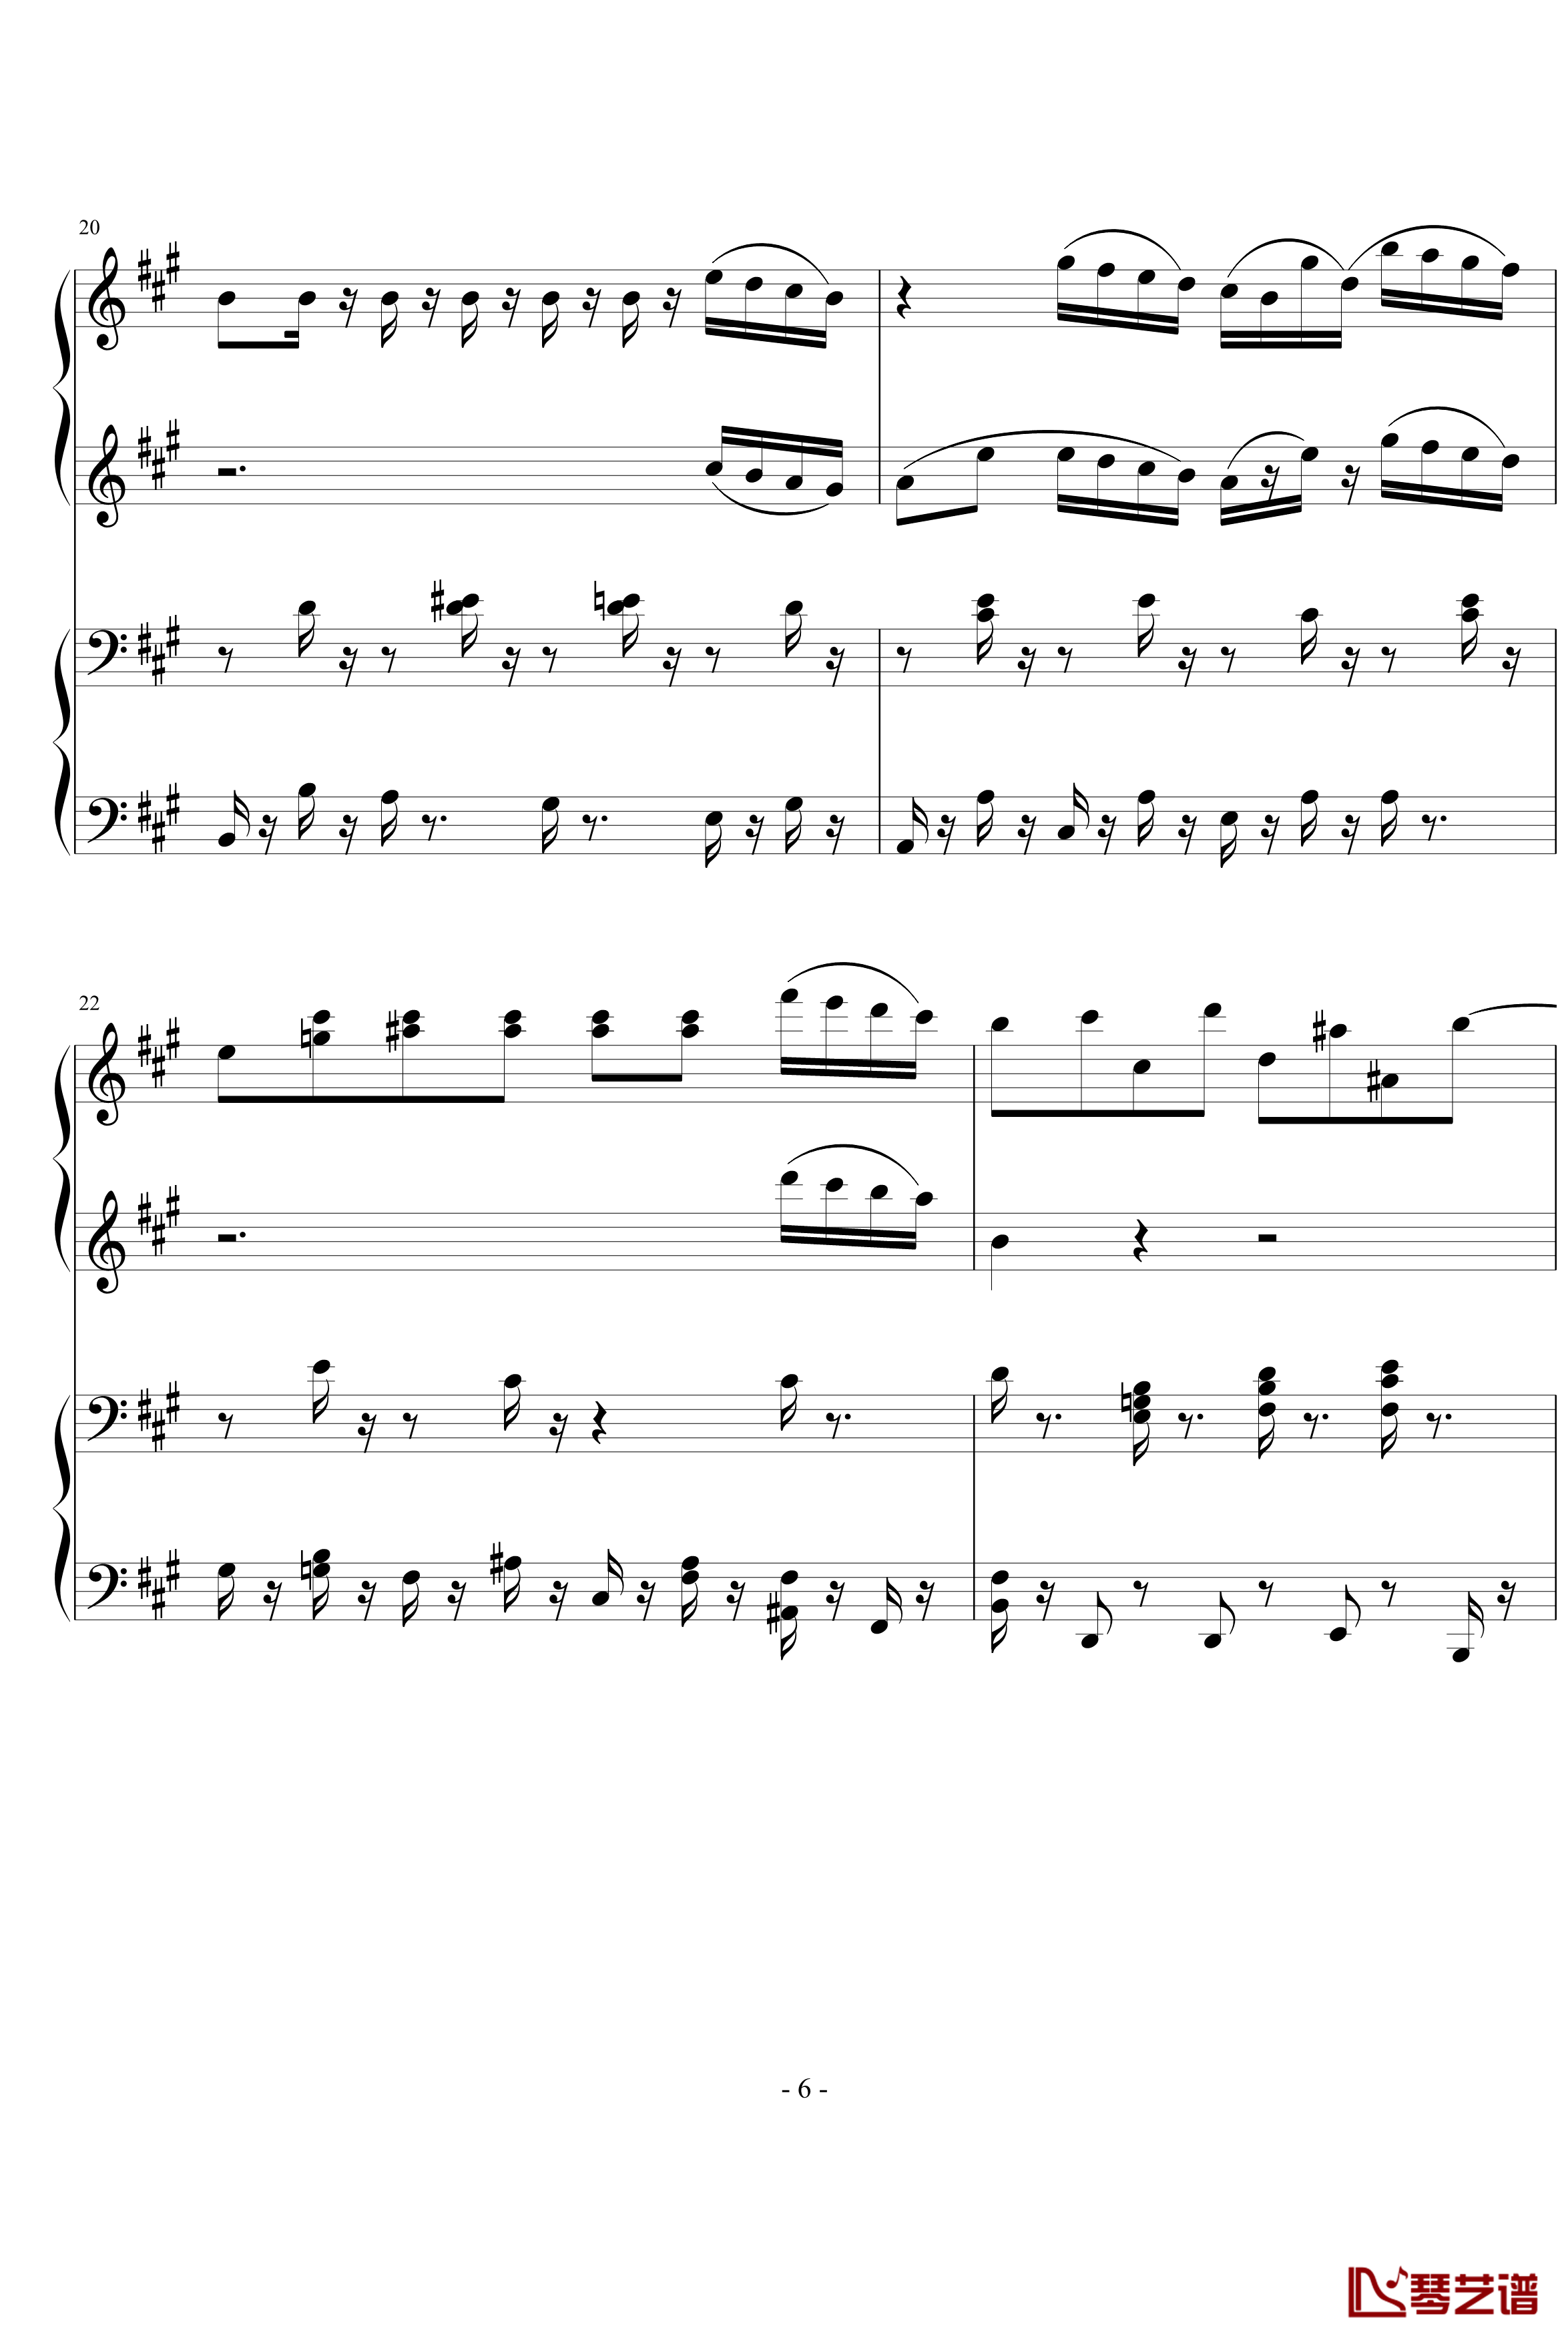 四小天鹅舞曲钢琴谱-柴科夫斯基-Peter Ilyich Tchaikovsky6